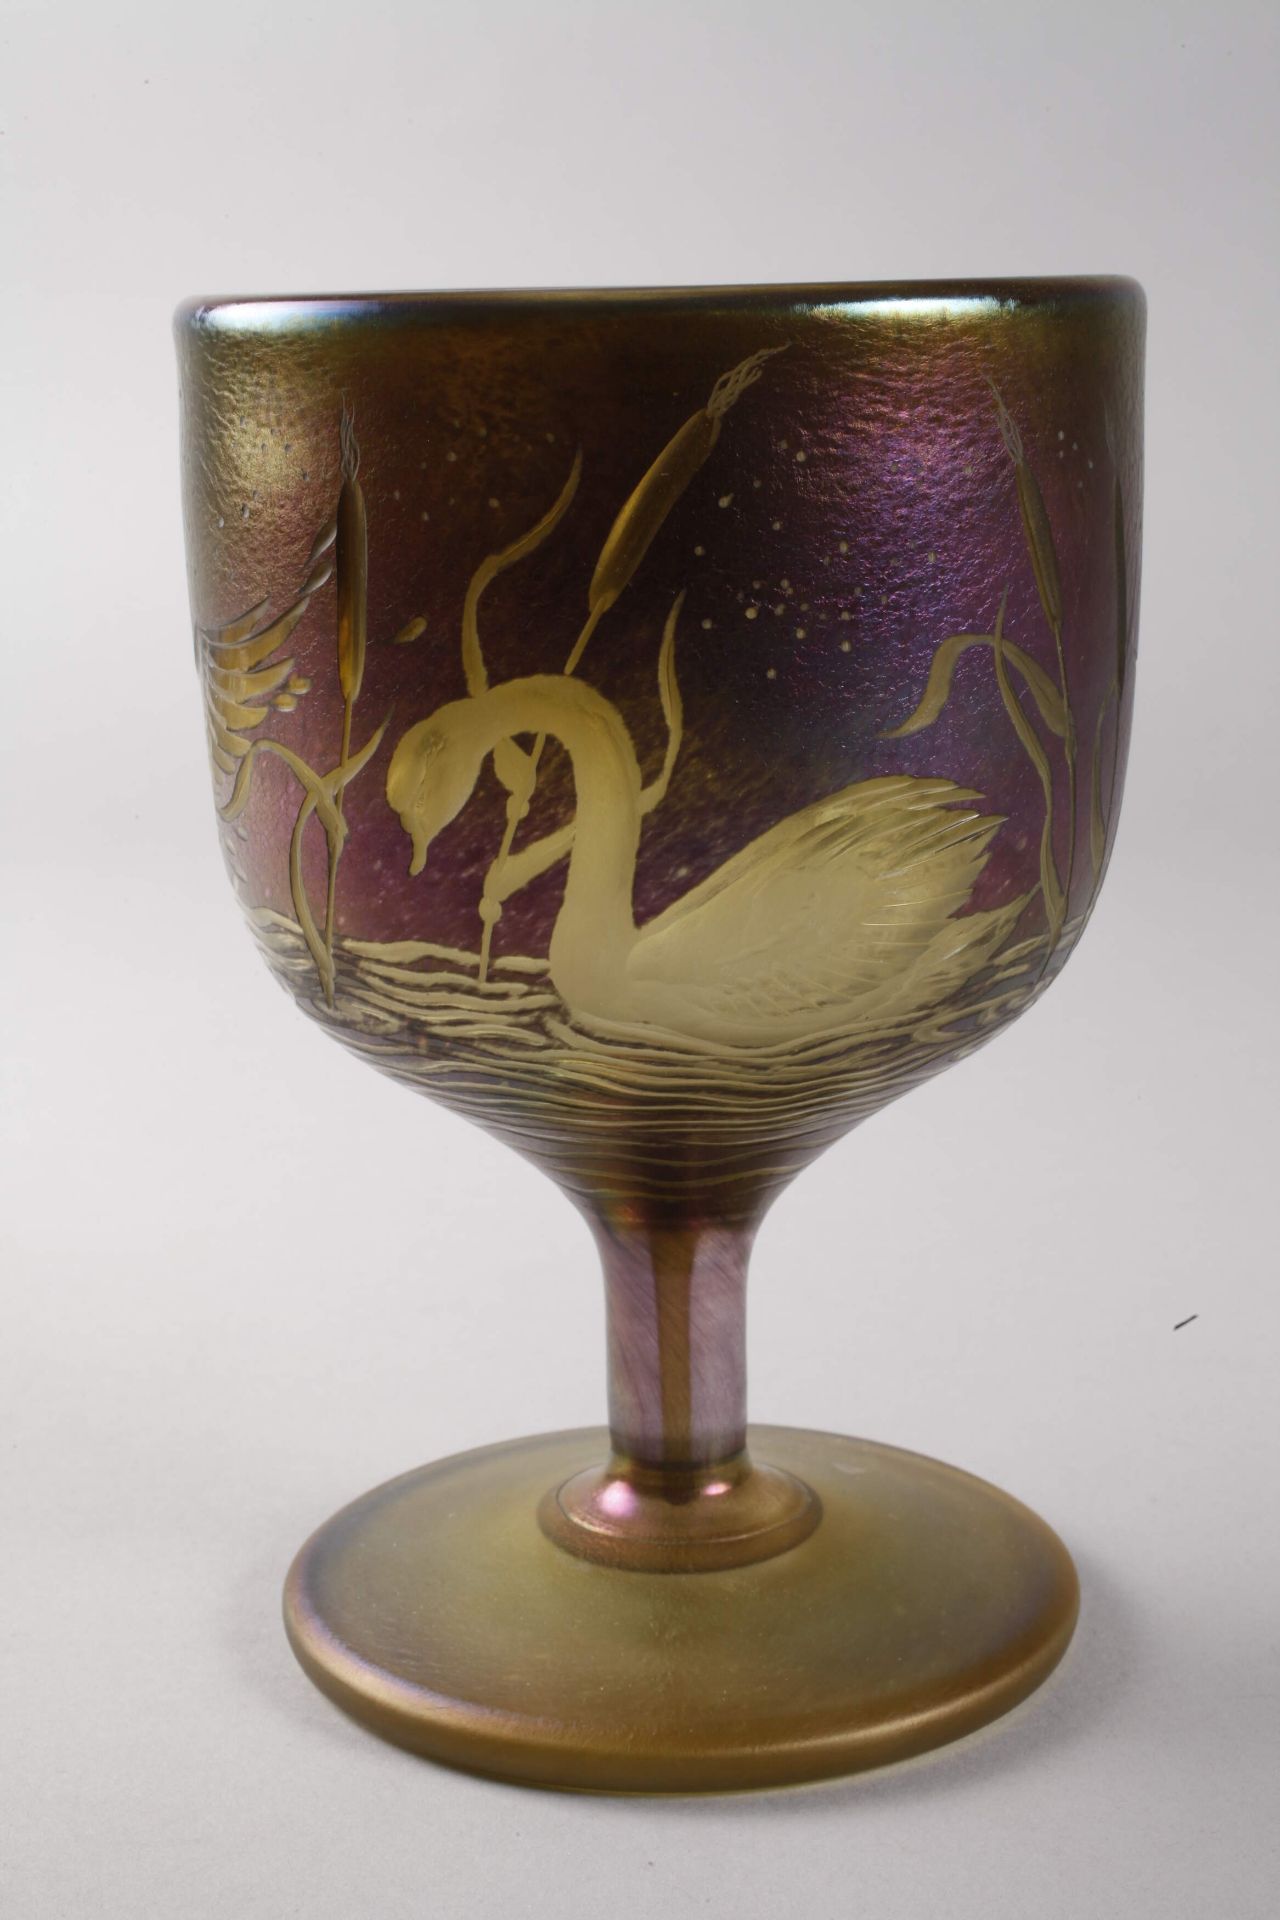 Goblet glass with swan motifsSchmid-Jacquet Goblet glass with swan motifs - Image 3 of 6